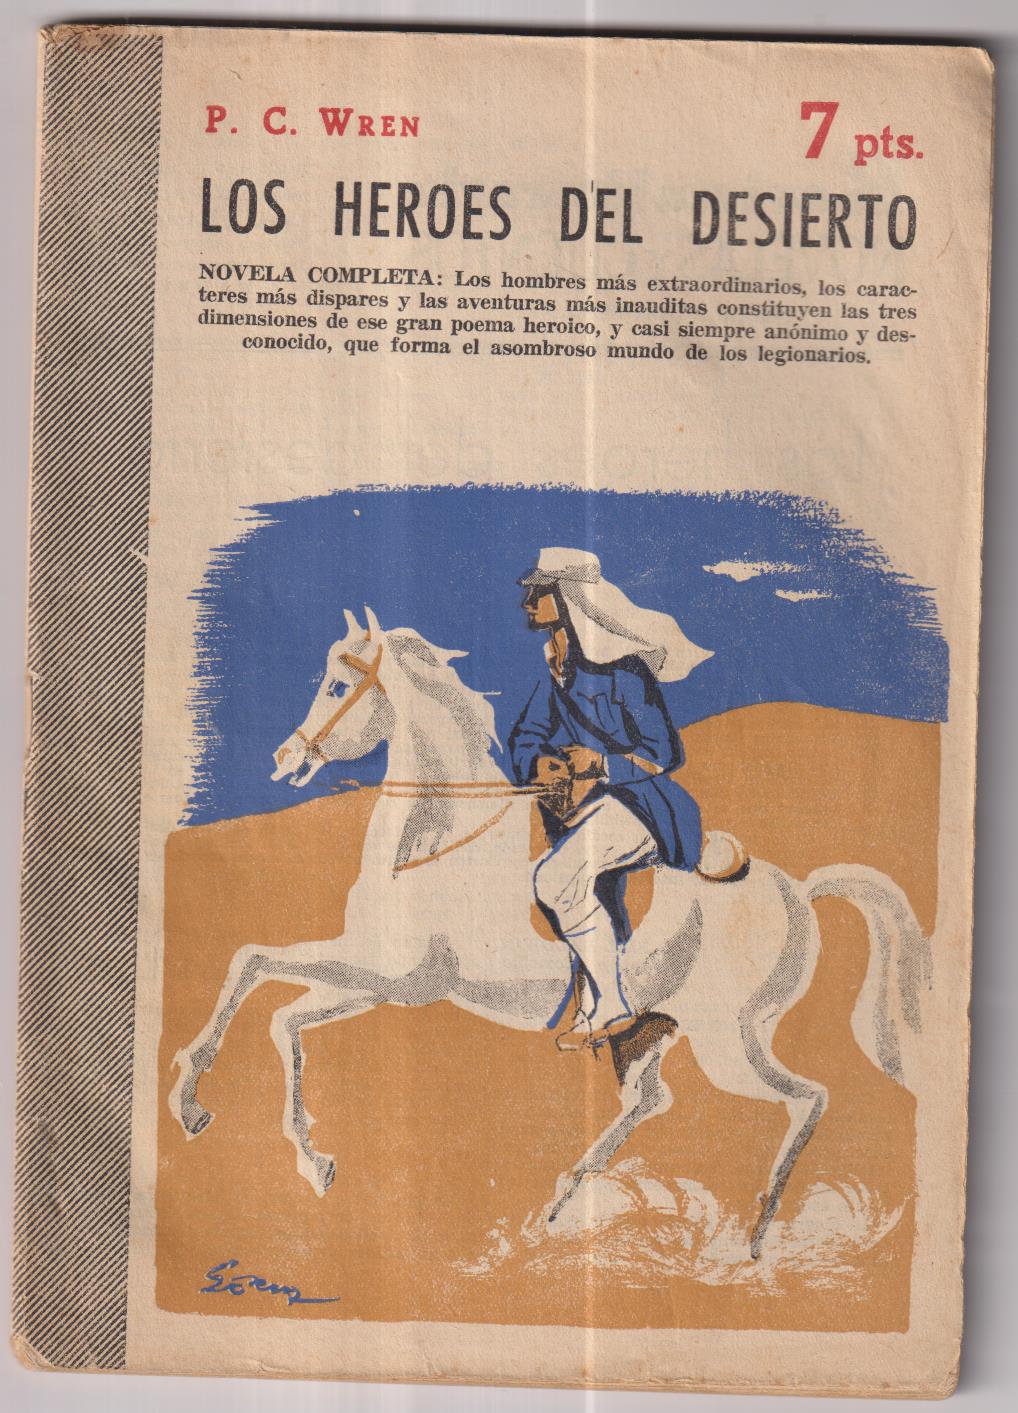 Revista Literaria Novelas y Cuentos nº 1356. P.C. Wren. Los Héroes del Desierto, Año 1957